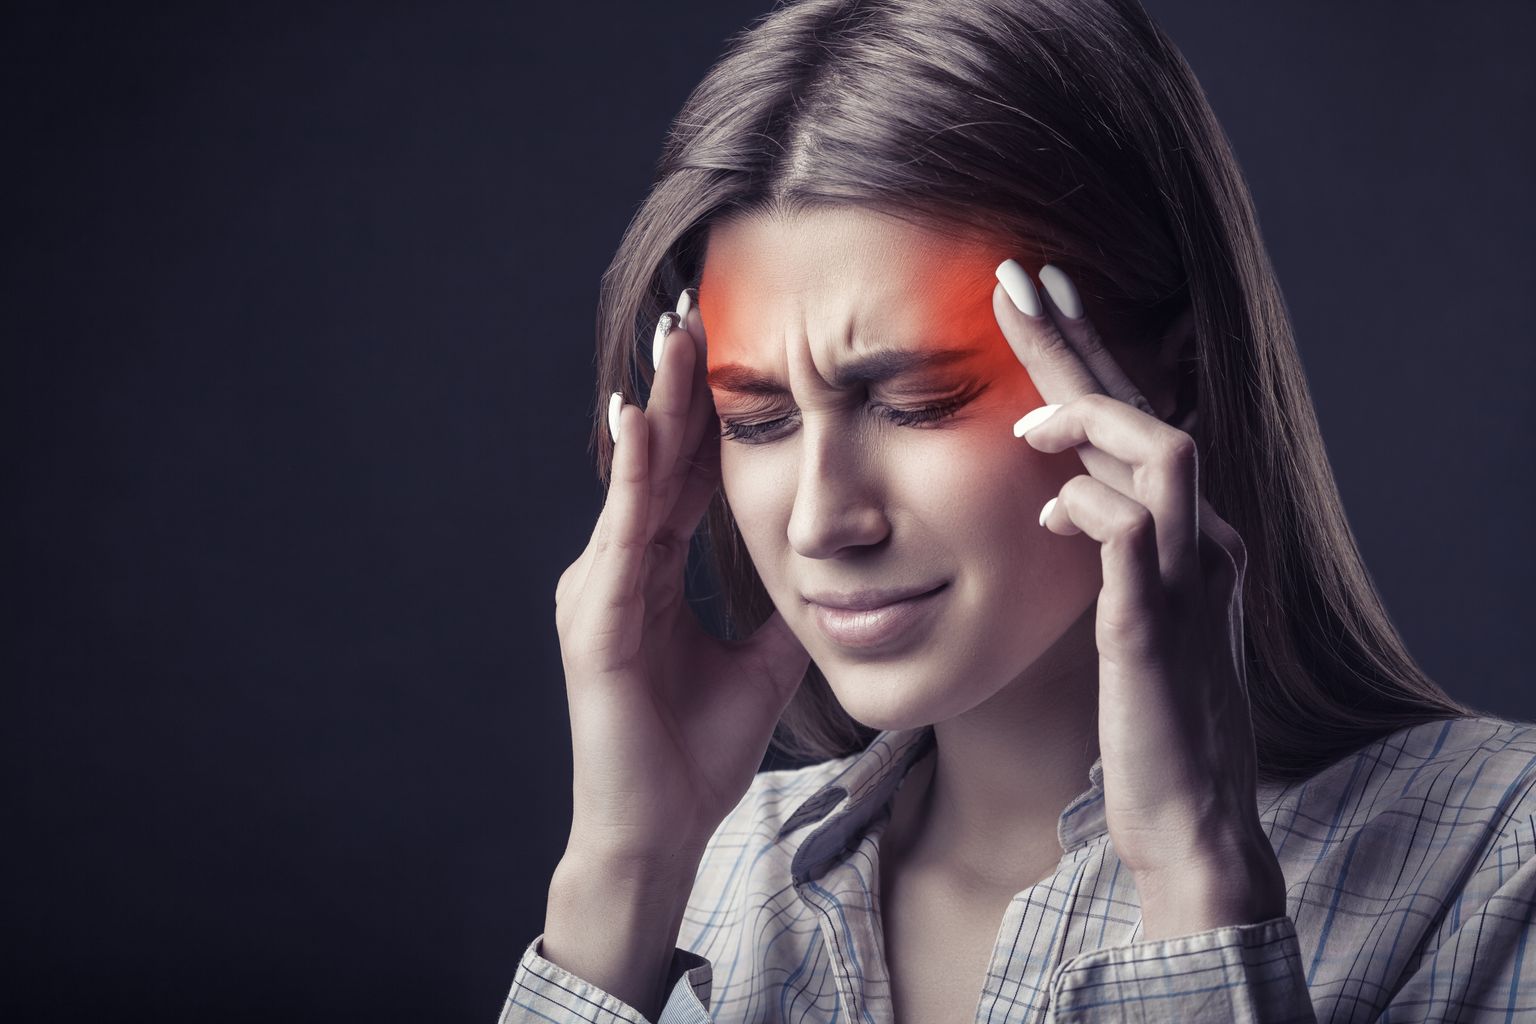 Jeune femme souffrant de maux de tête sur fond sombre. Prise de vue en studio